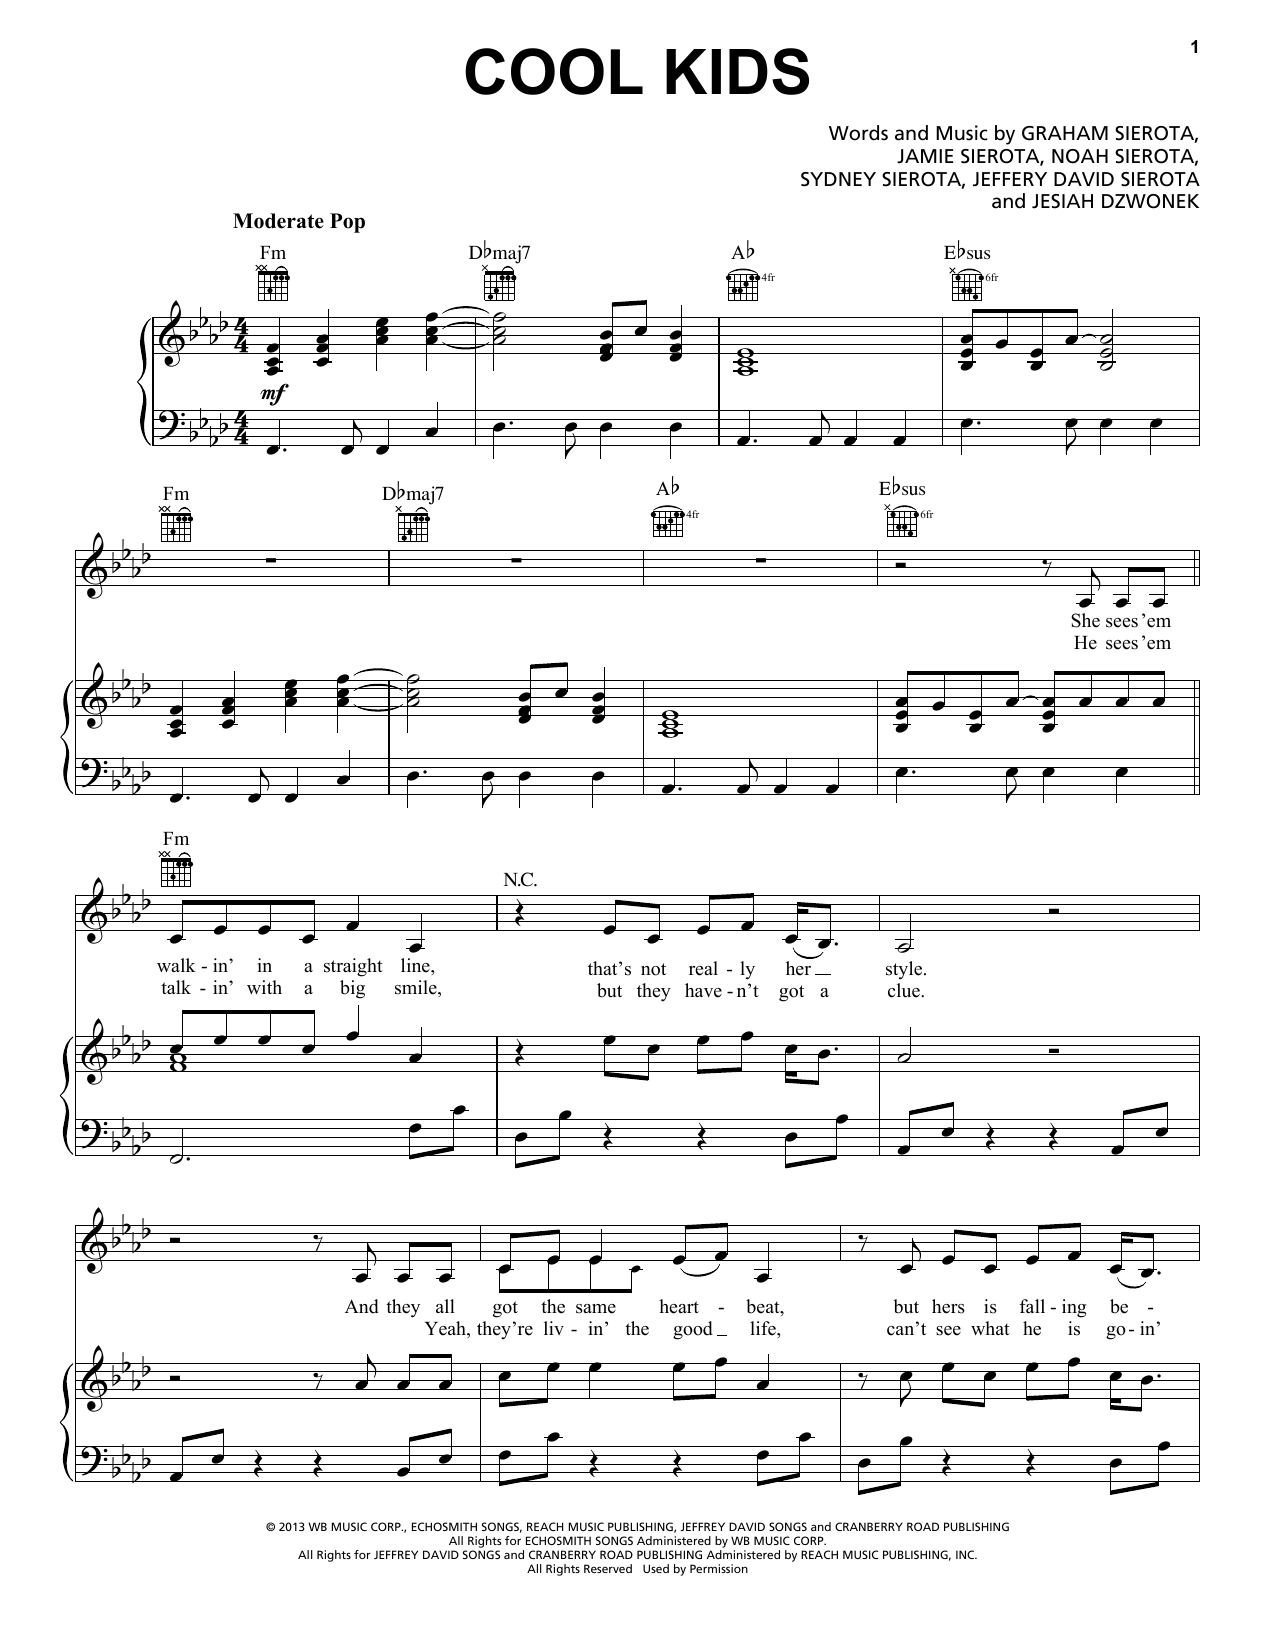 Echosmith Cool Kids Sheet Music Notes & Chords for Ukulele Chords/Lyrics - Download or Print PDF